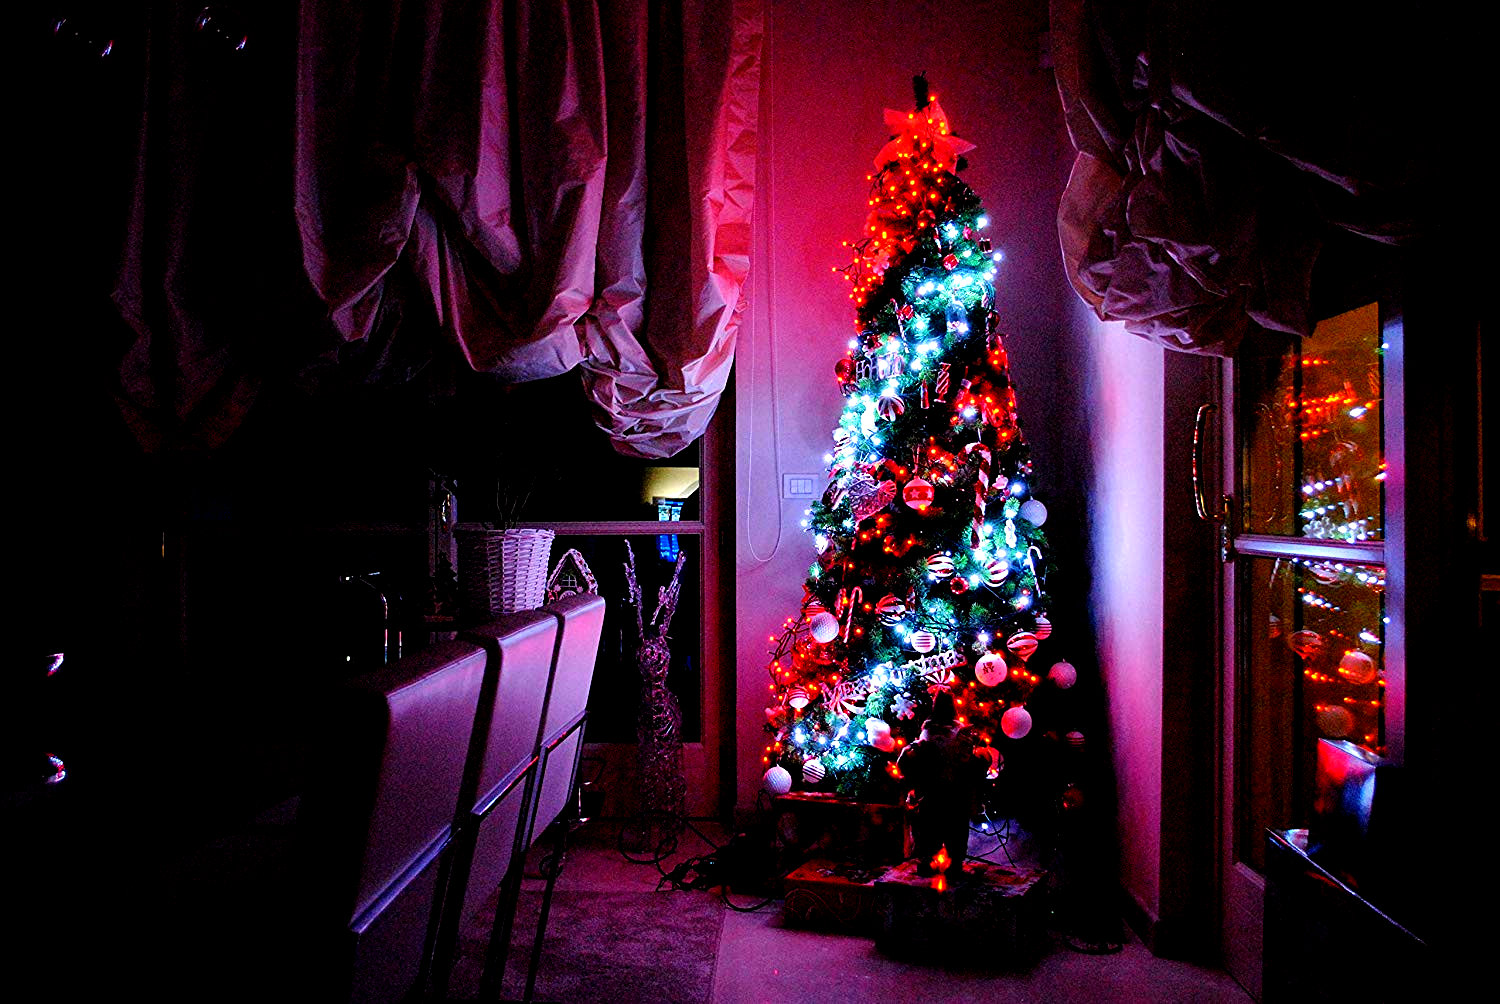 Luces inteligentes centelleantes instaladas alrededor del árbol de Navidad.